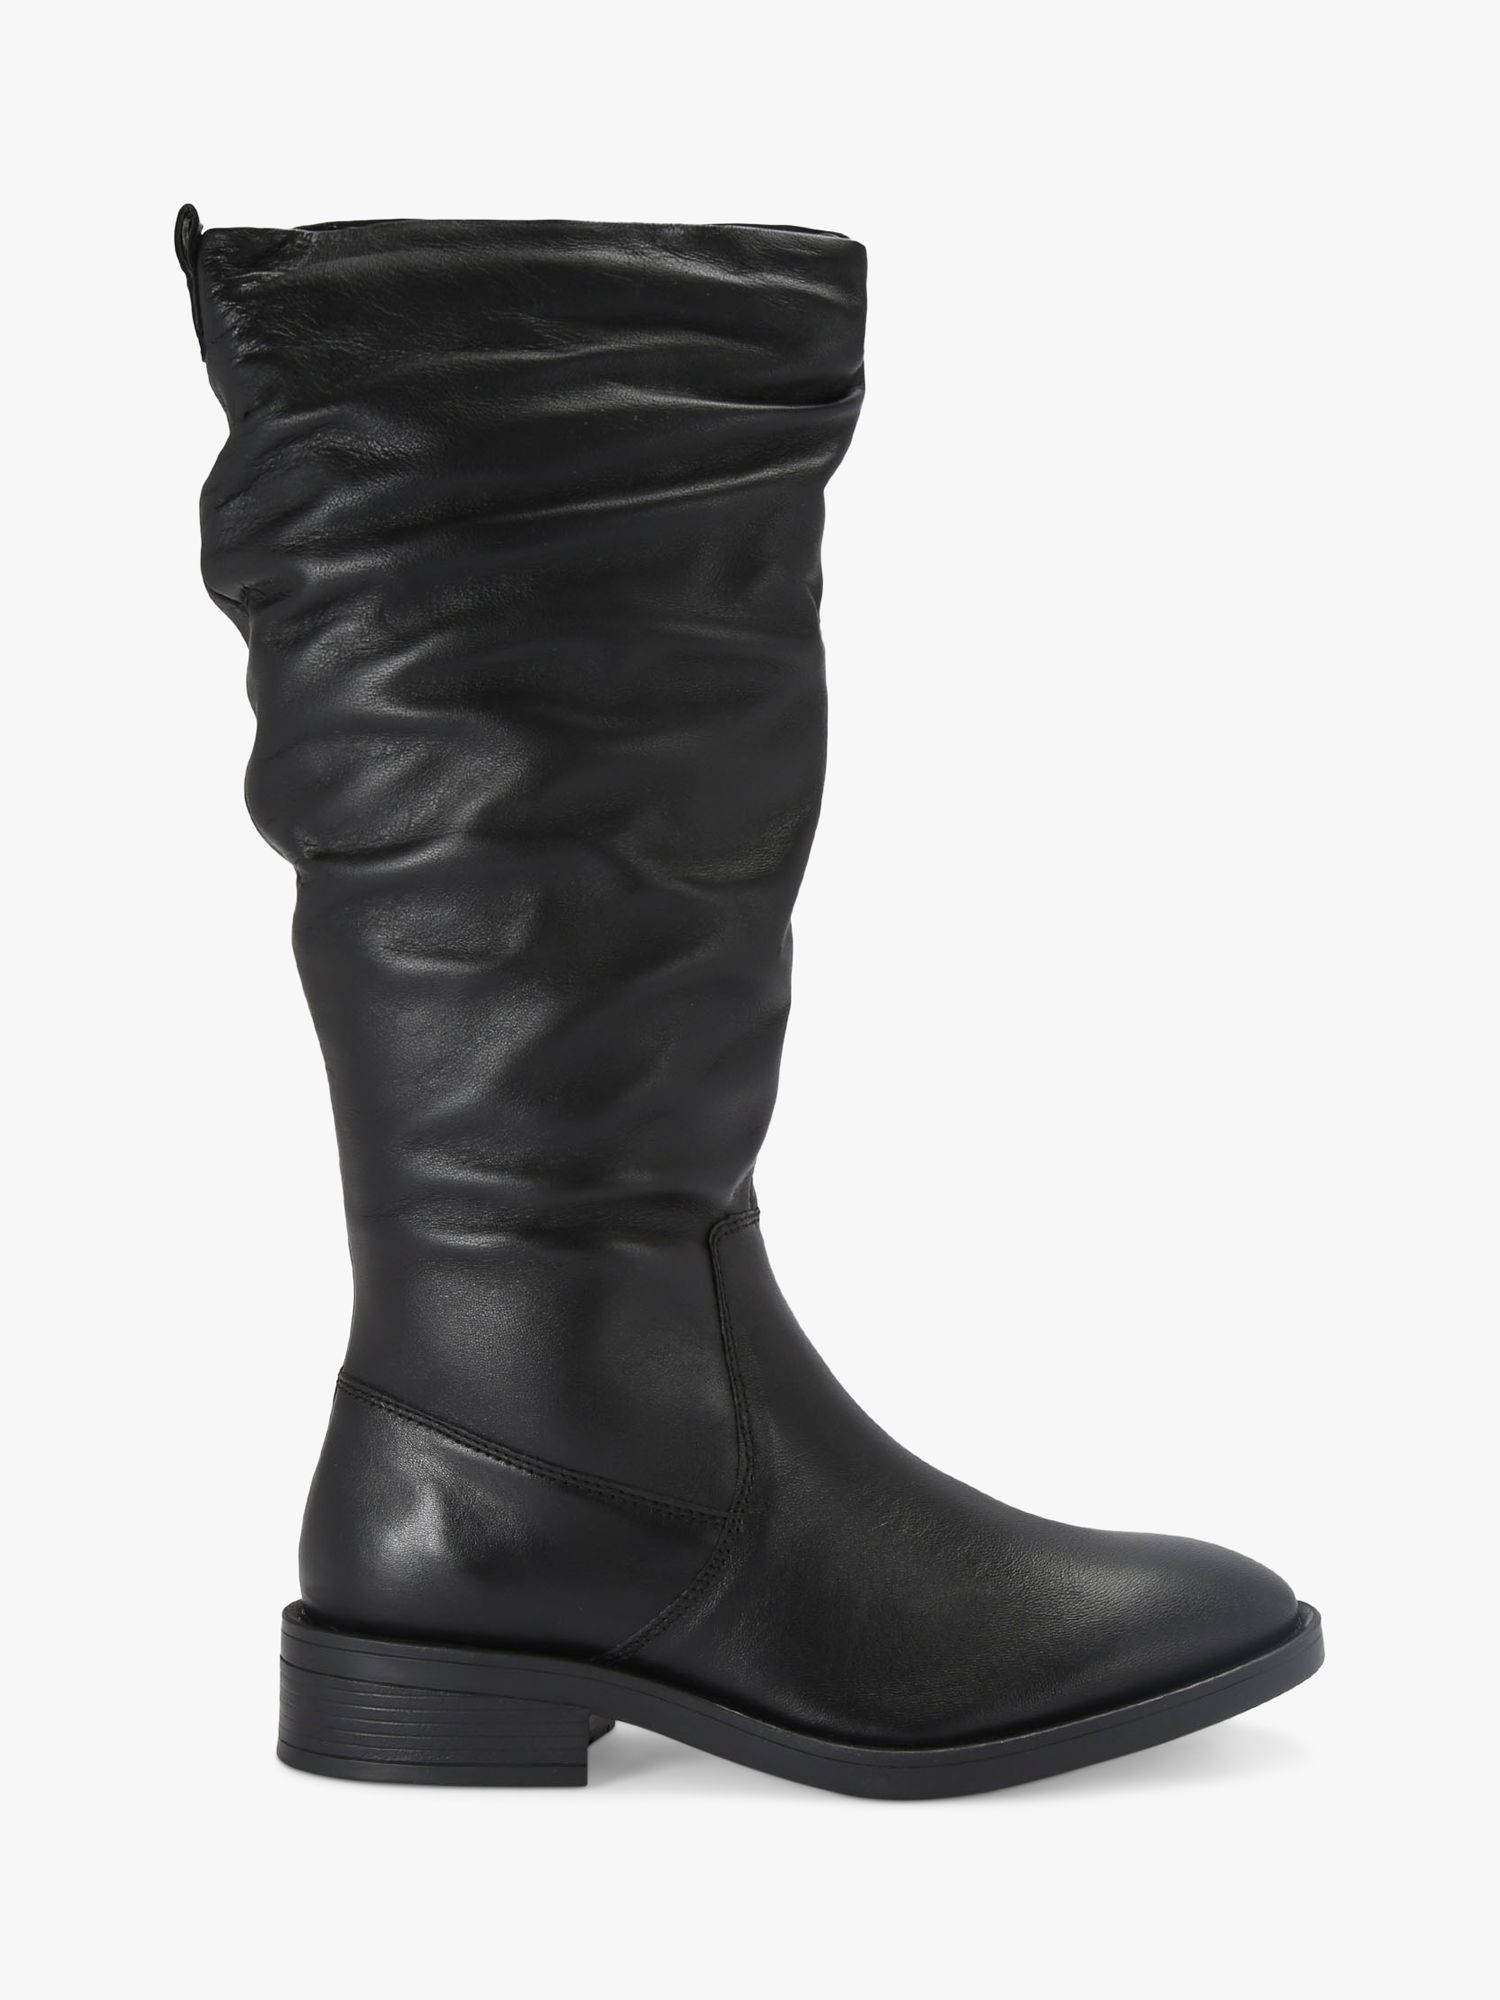 Carvela Parlour Leather Calf Boots, Black, 9